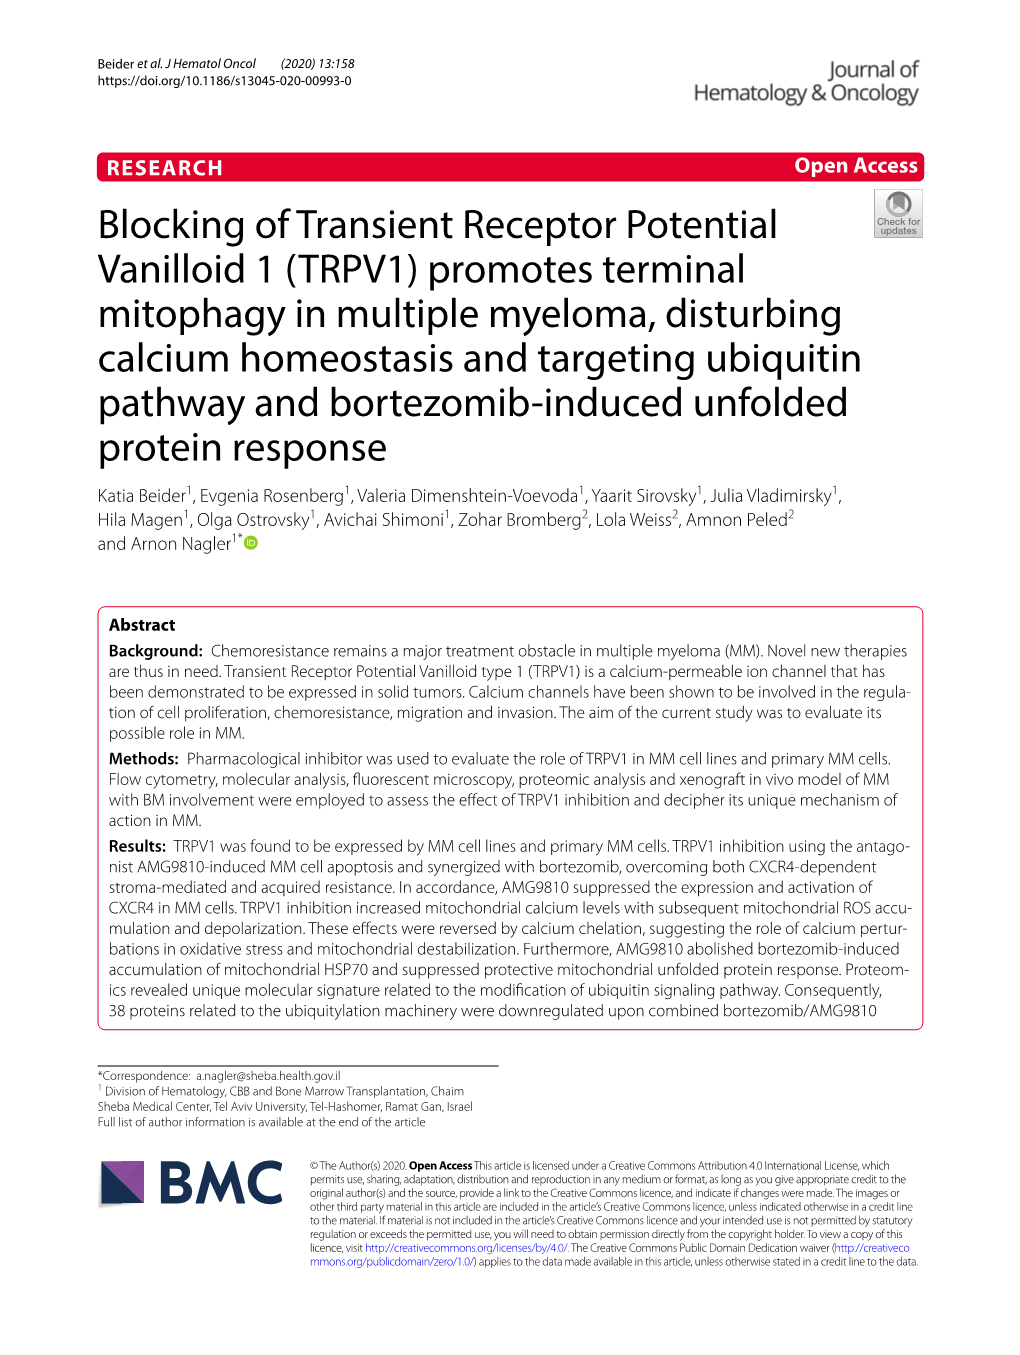 Blocking of Transient Receptor Potential Vanilloid 1 (TRPV1)